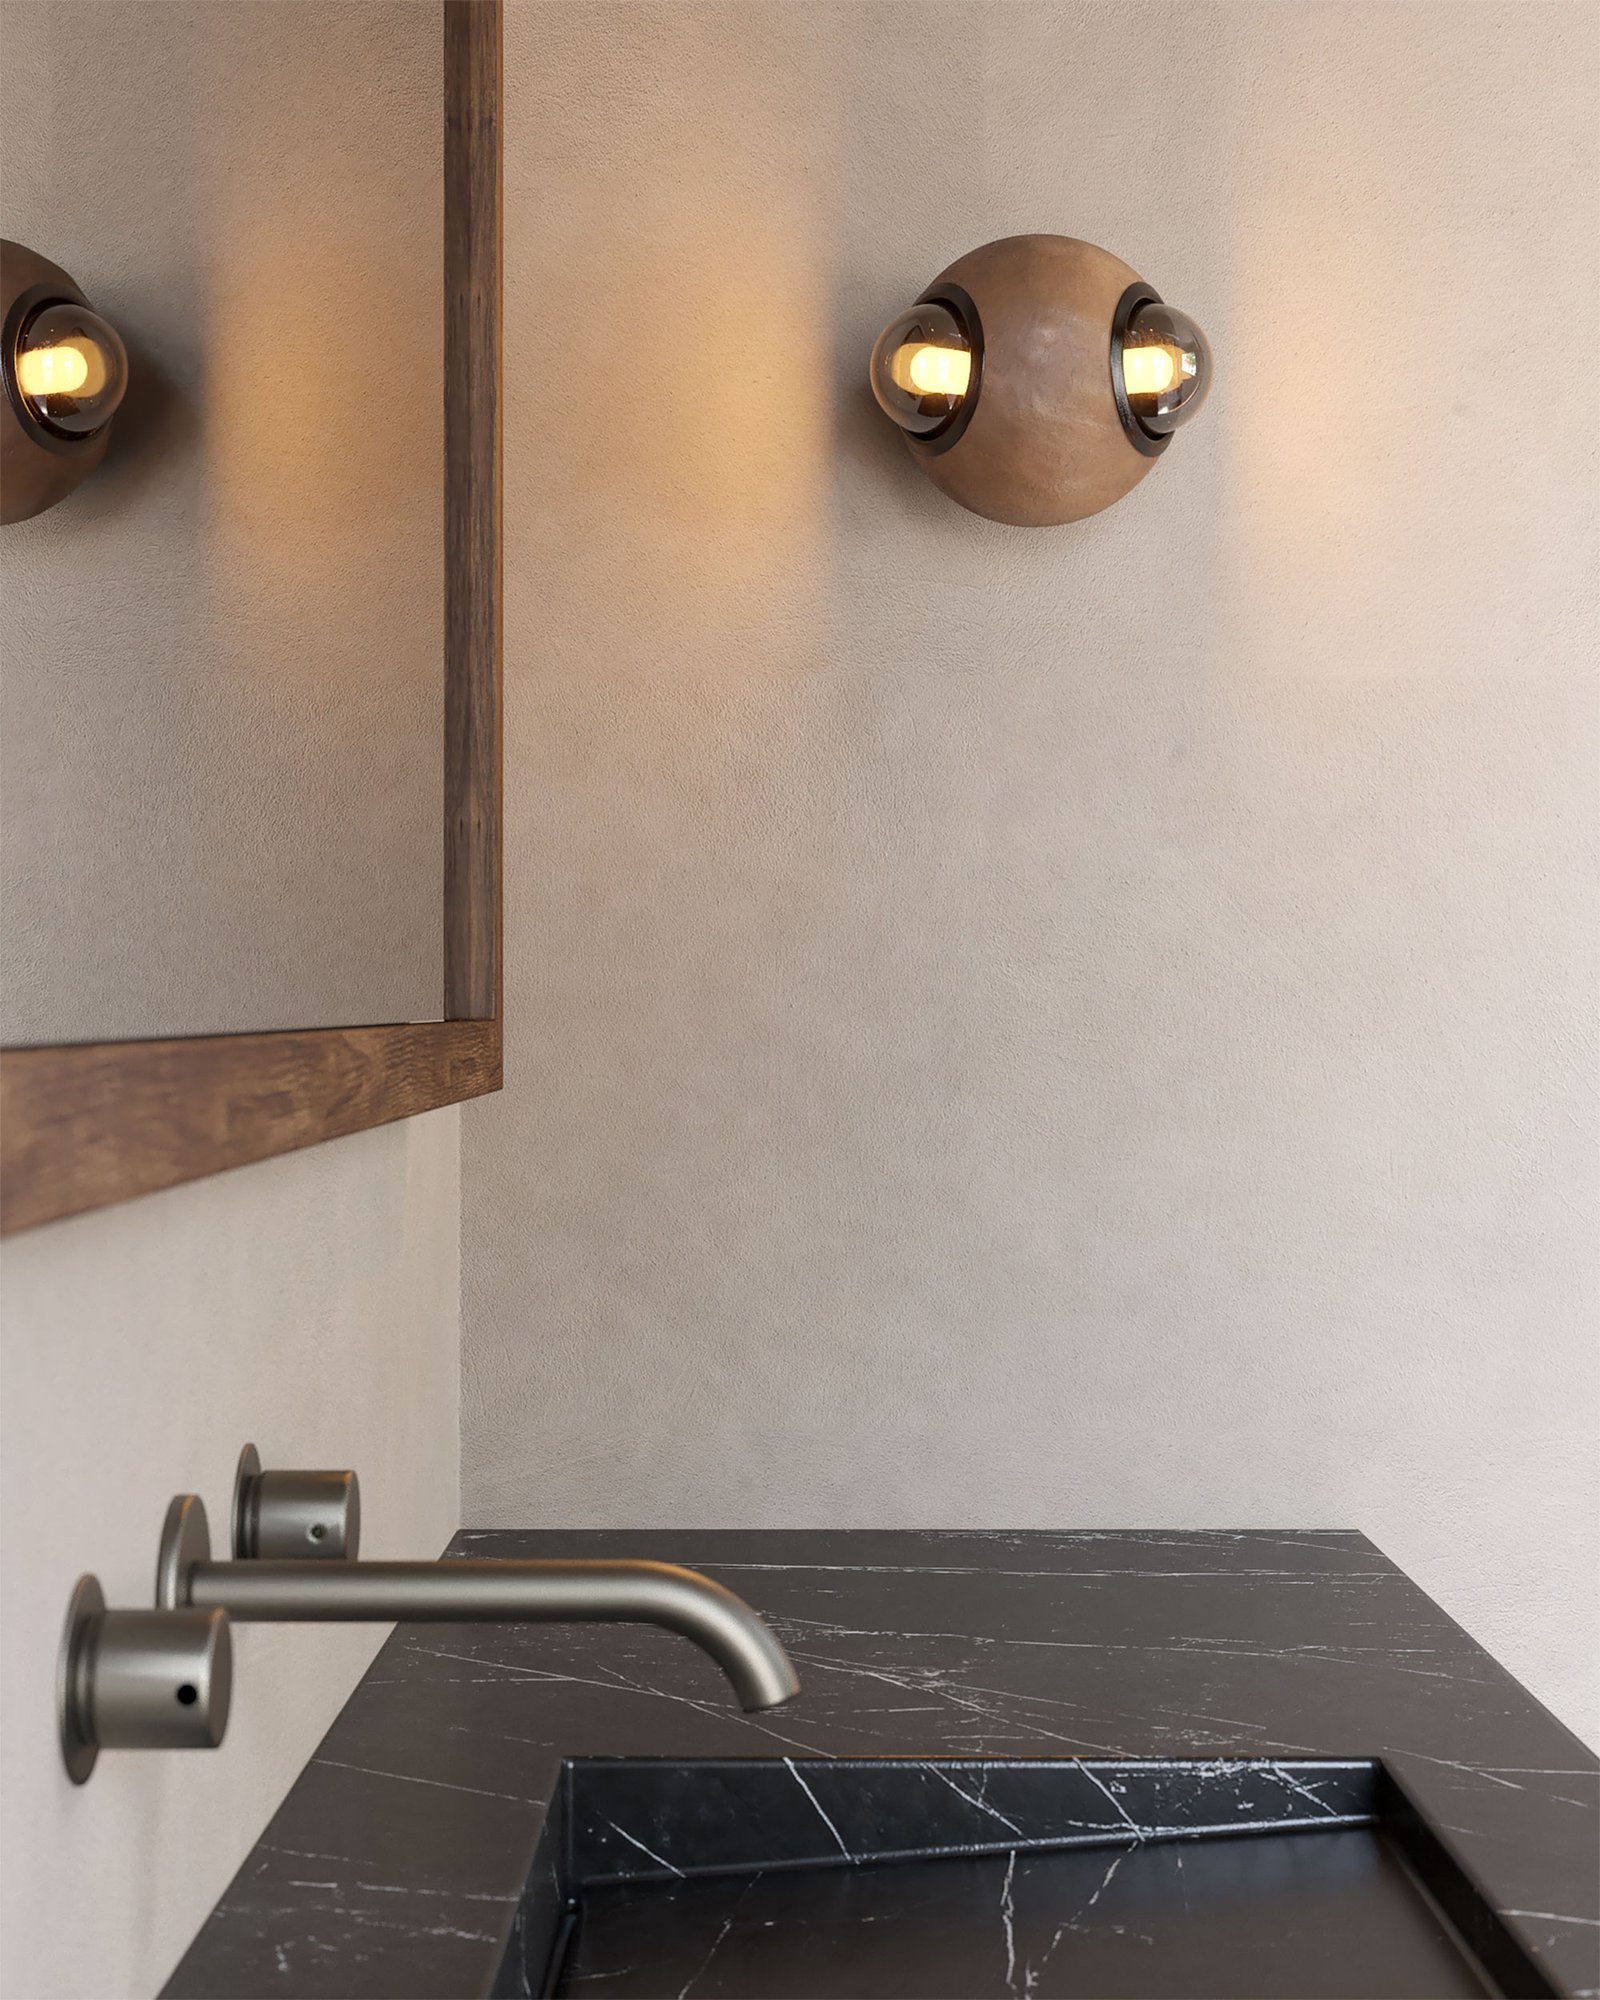 Lámpara de muro HUMO color barro moteado con difusores de vidrio ahumado y detalle de aluminio anodizado color negro diseñada por Bandido Studio en baño moderno de mármol negro